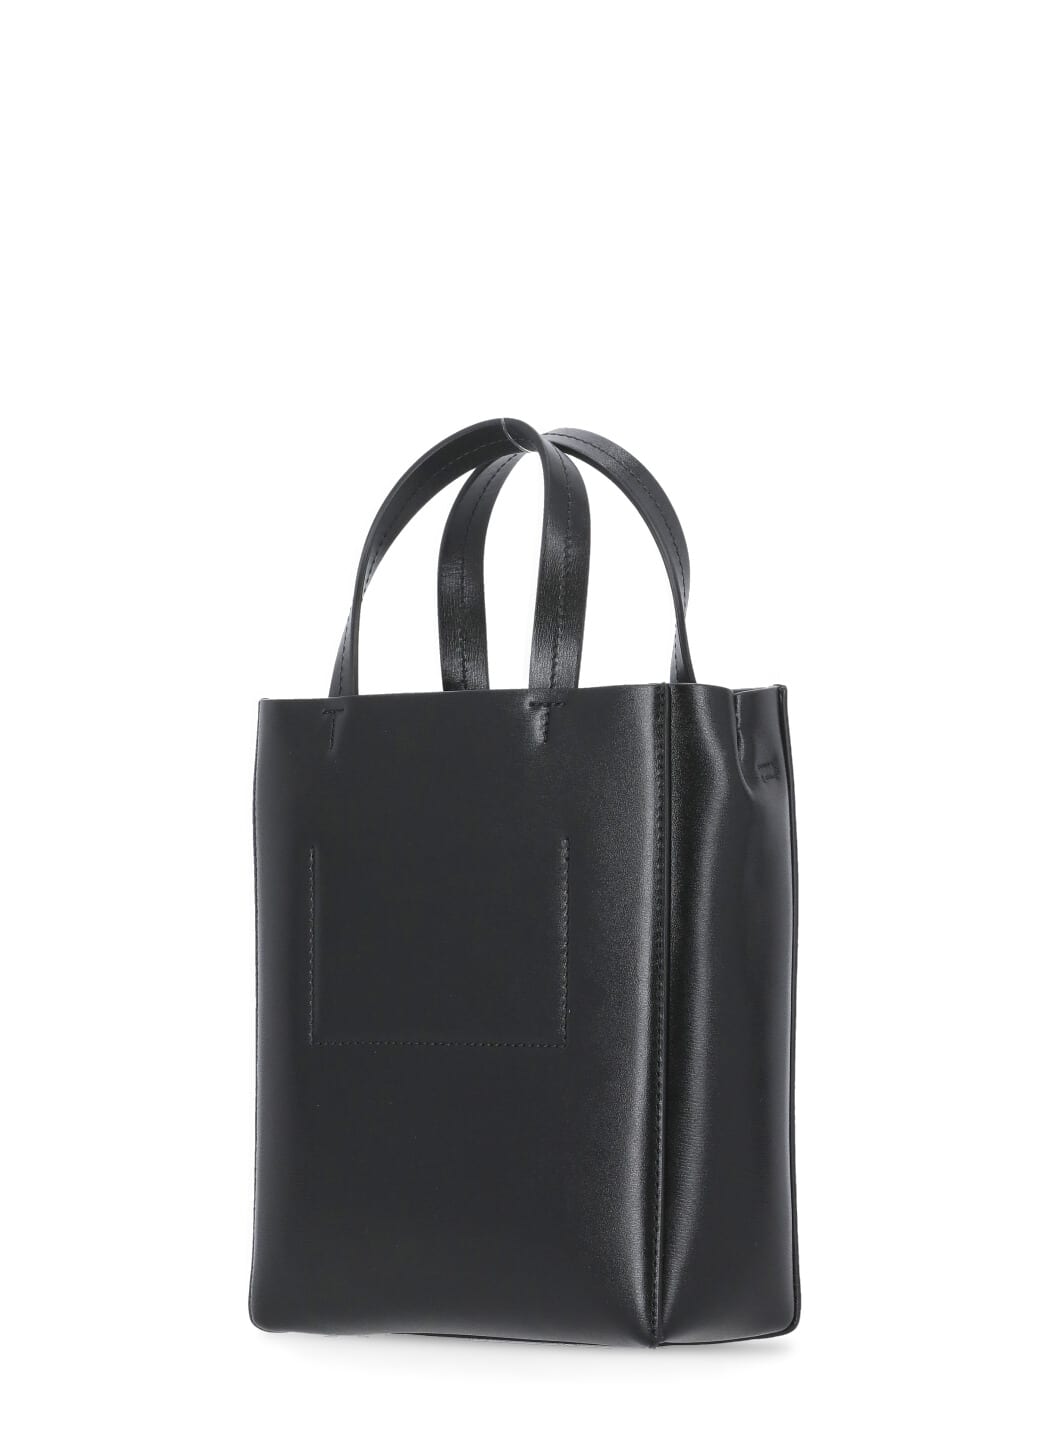 Shop Jil Sander Tote Mini Bag In Black